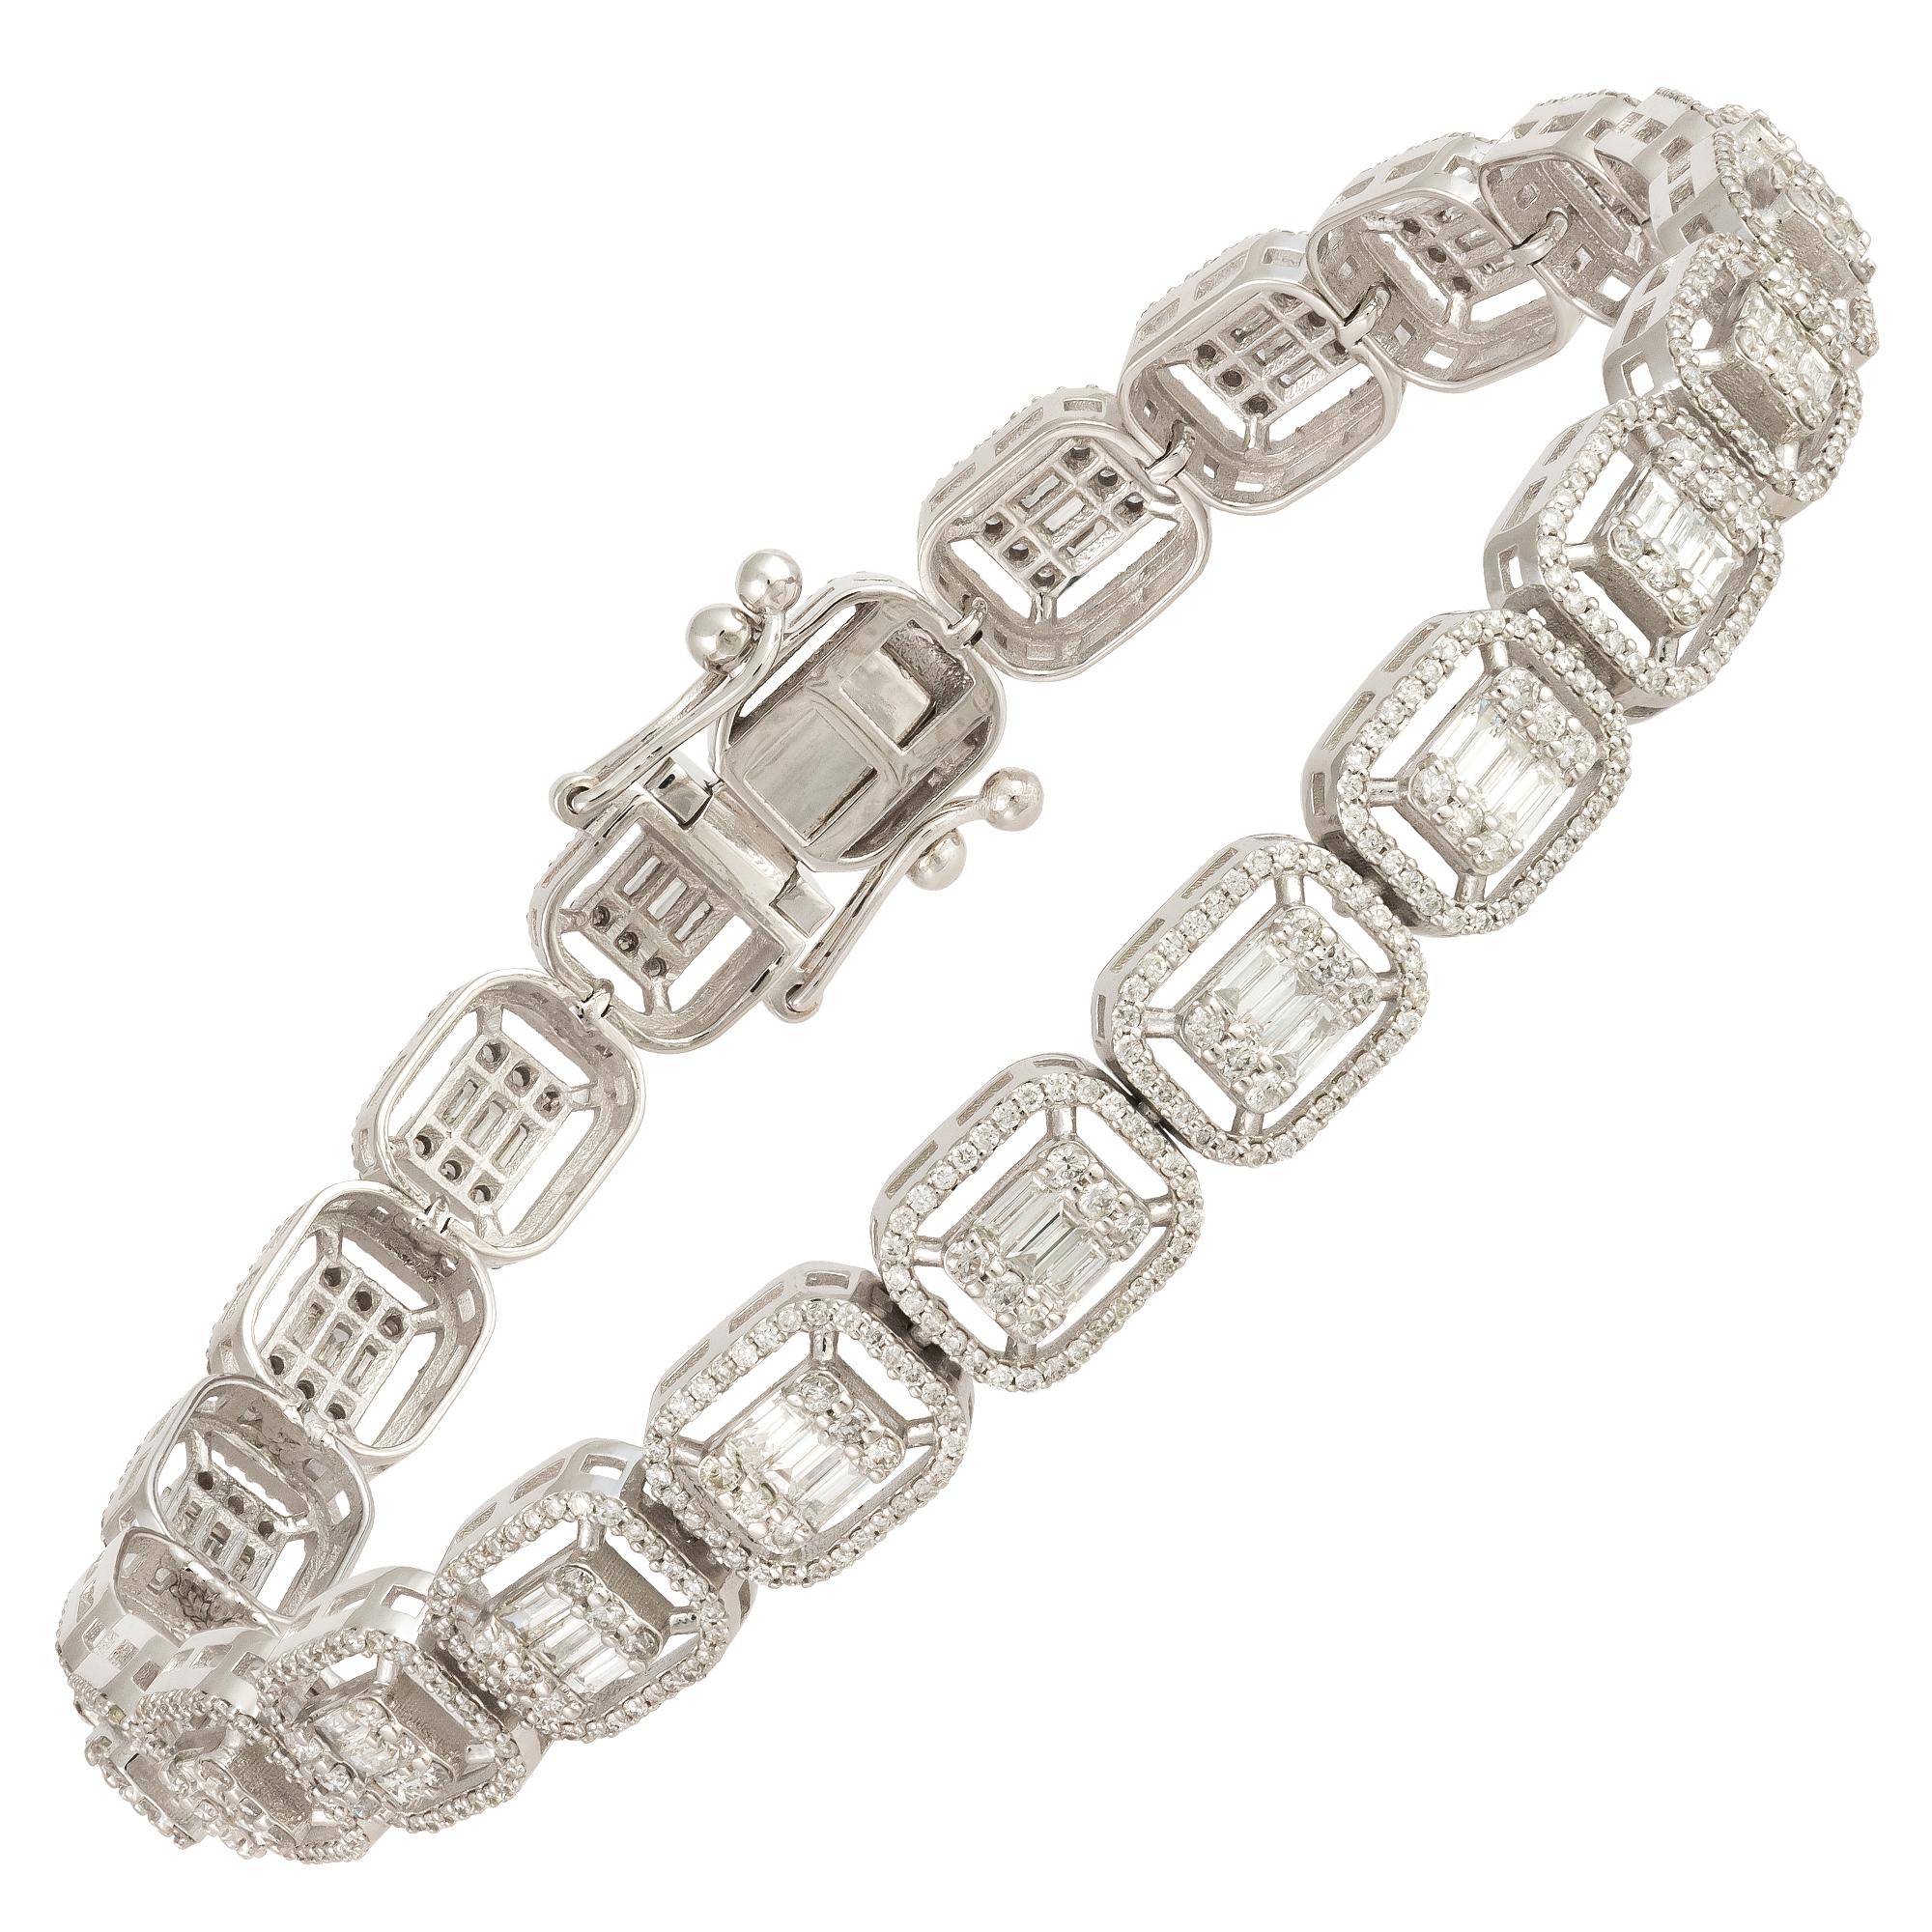 Modern Classic White Gold 18K Bracelet Diamond For Her For Sale